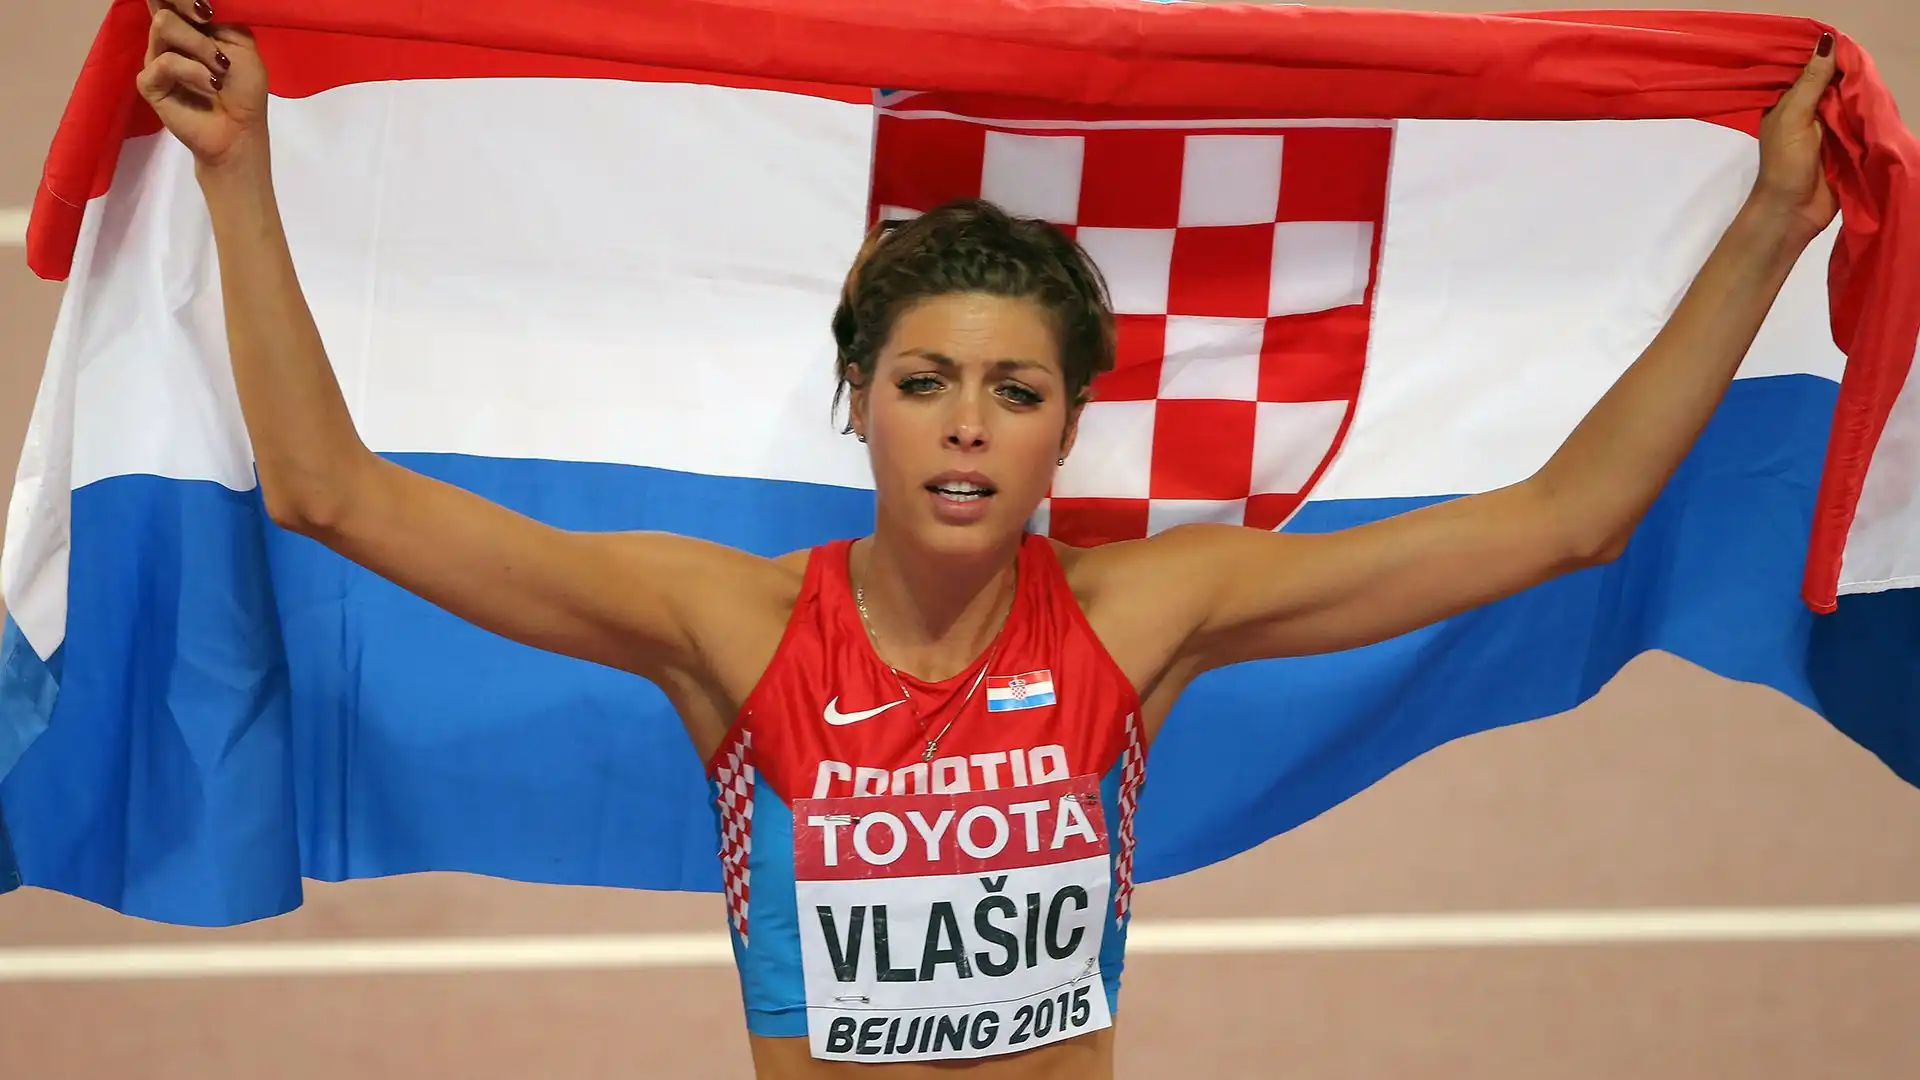 Il suo record personale è di 2,08 metri, realizzato il 31 agosto 2009 a Zagabria; questa misura è anche il record nazionale croato e secondo risultato di tutti i tempi